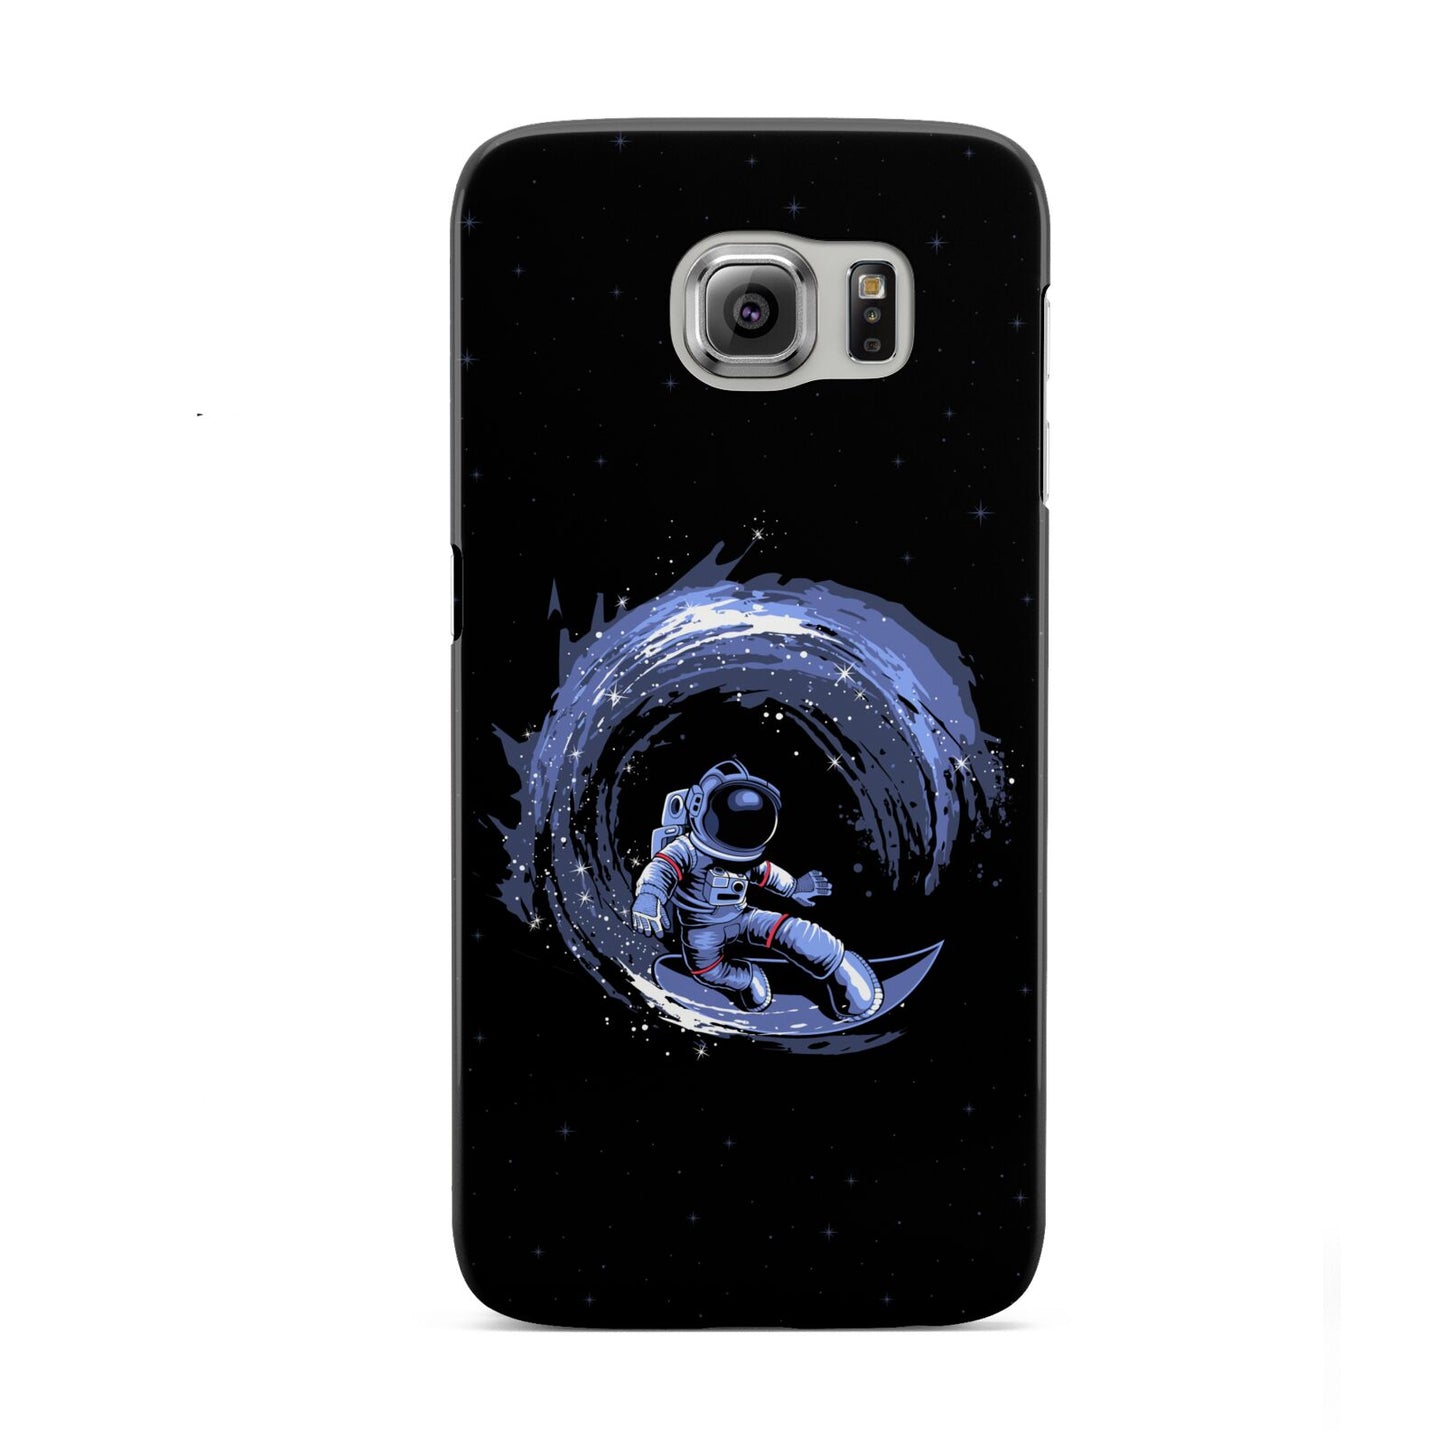 Surfing Astronaut Samsung Galaxy S6 Case